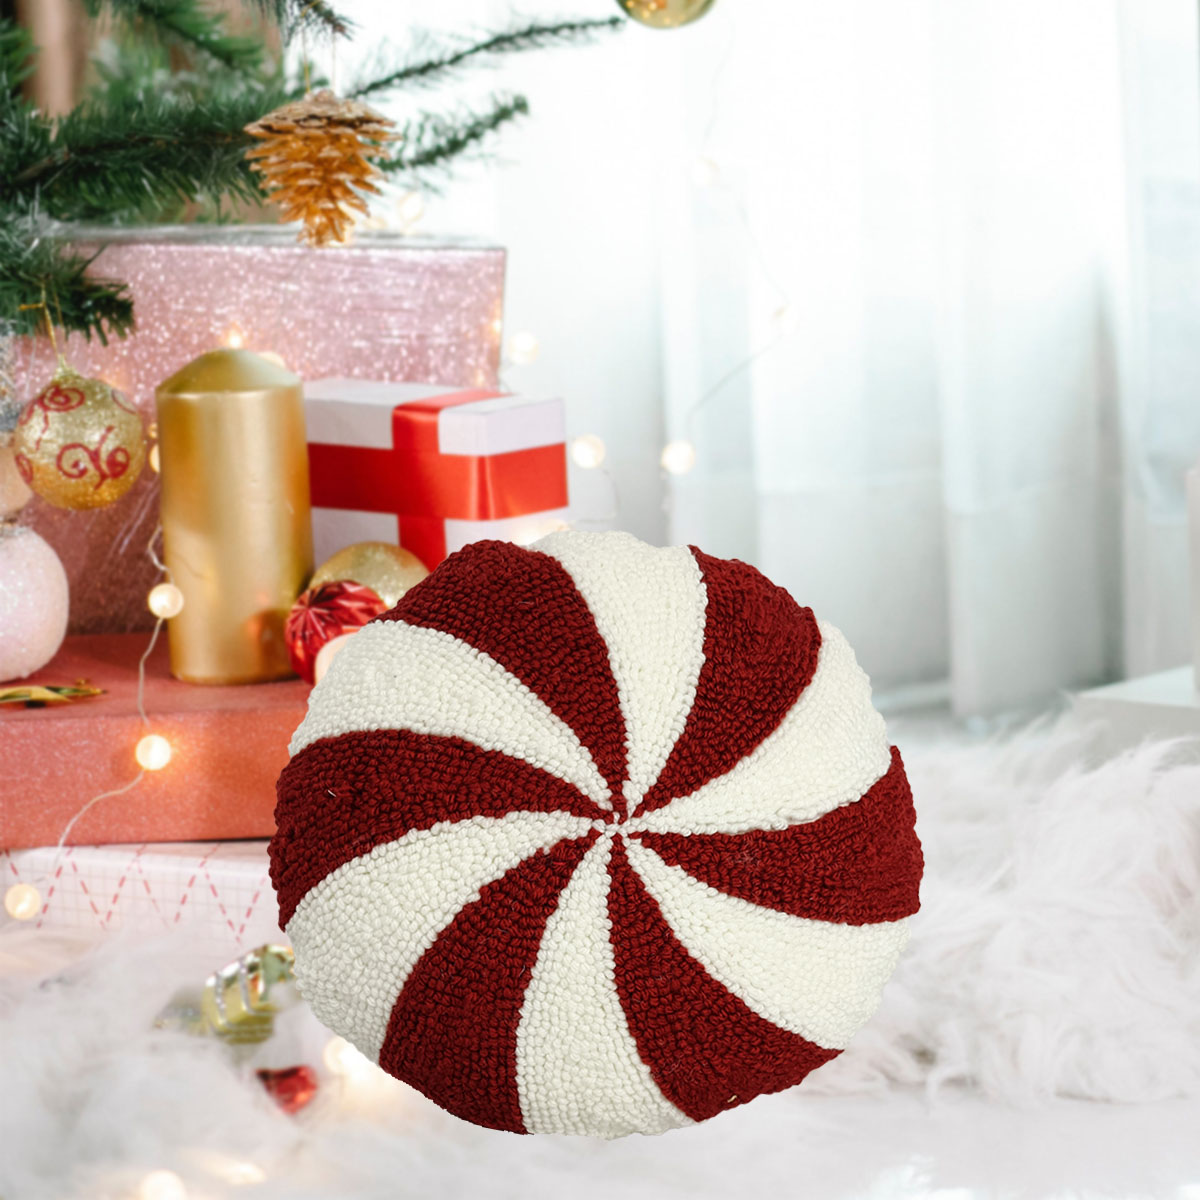 빨간색과 흰색 줄무늬 크리스마스 베개: 축제 휴일 장식